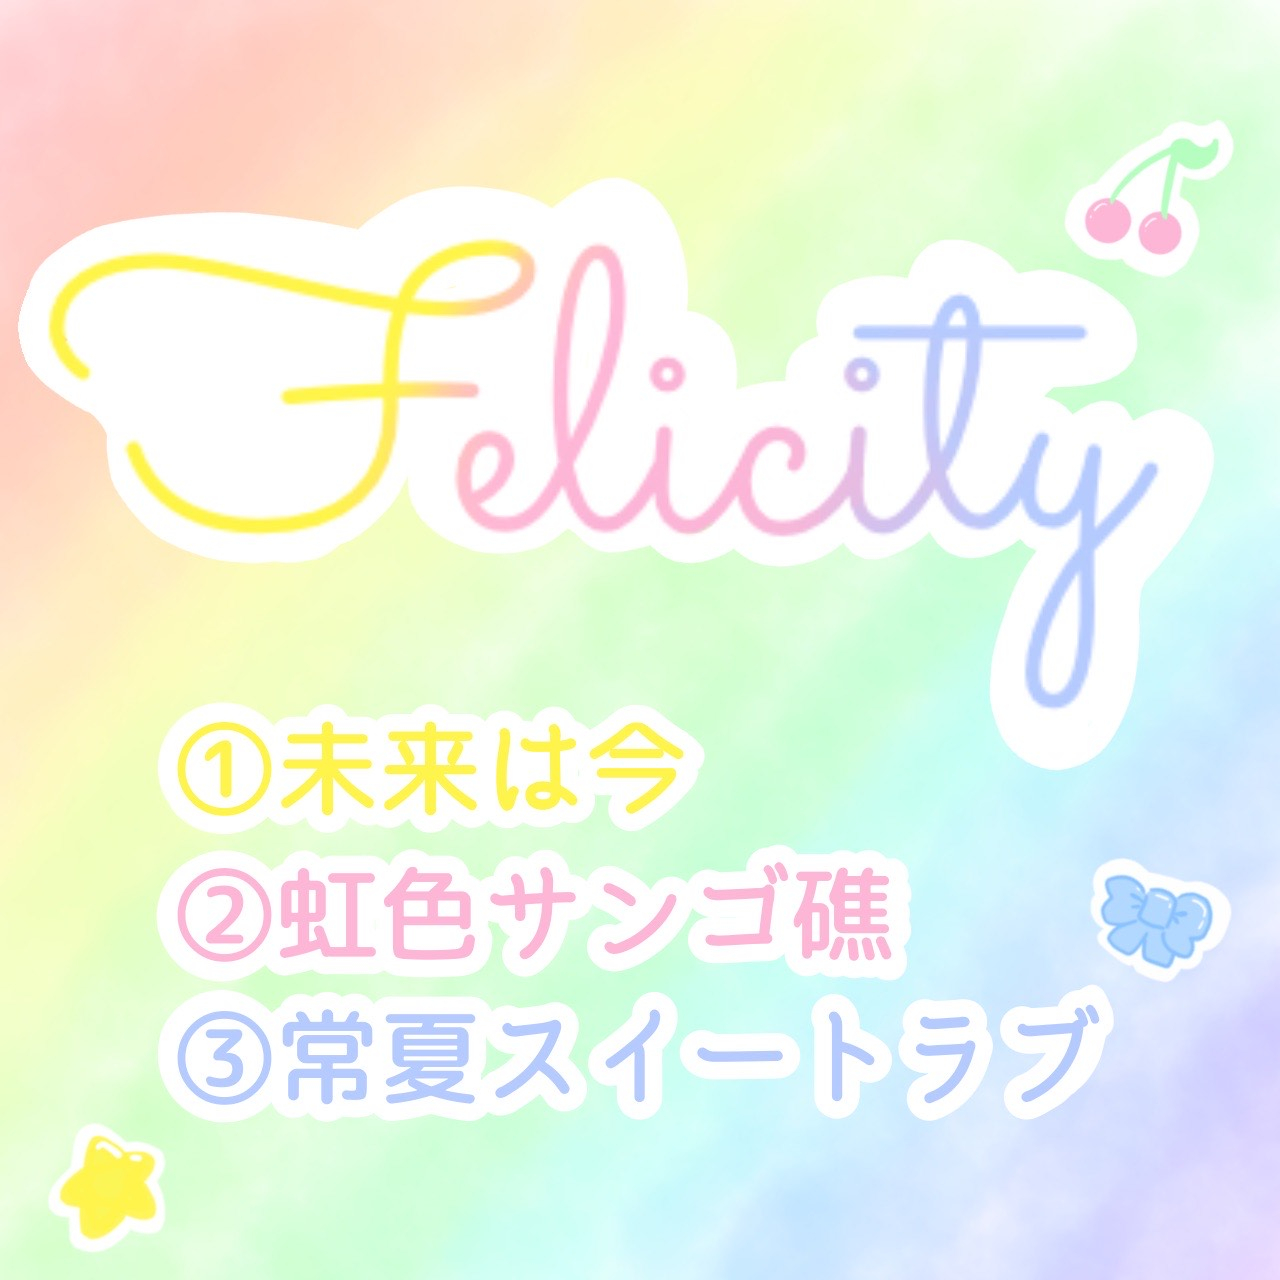 手焼きCD『Felicity』